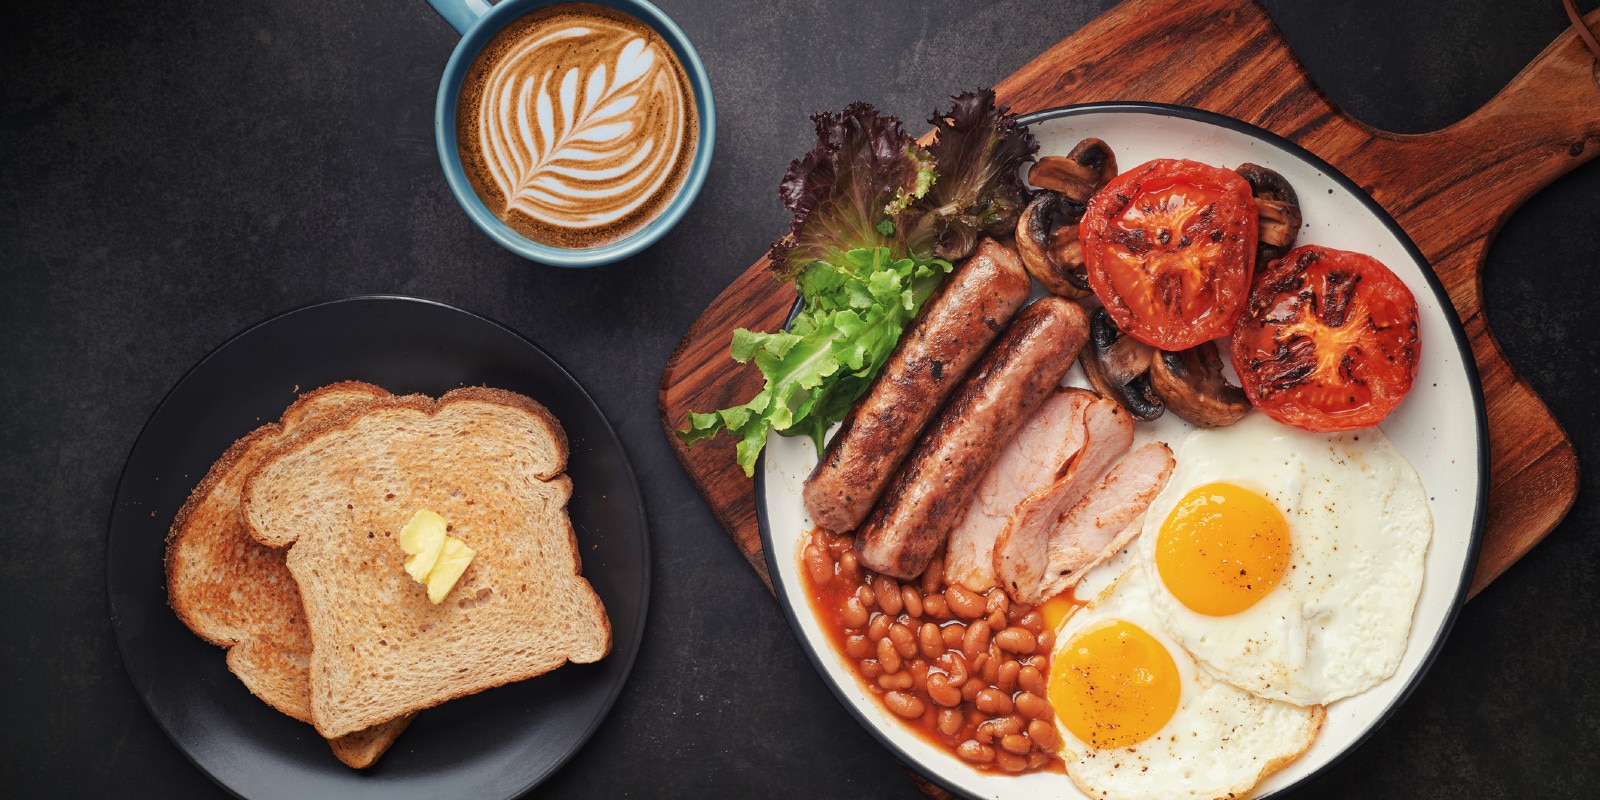 typisches englisches frühstück mit baked beans, würstchen, spiegelei, toast und butter